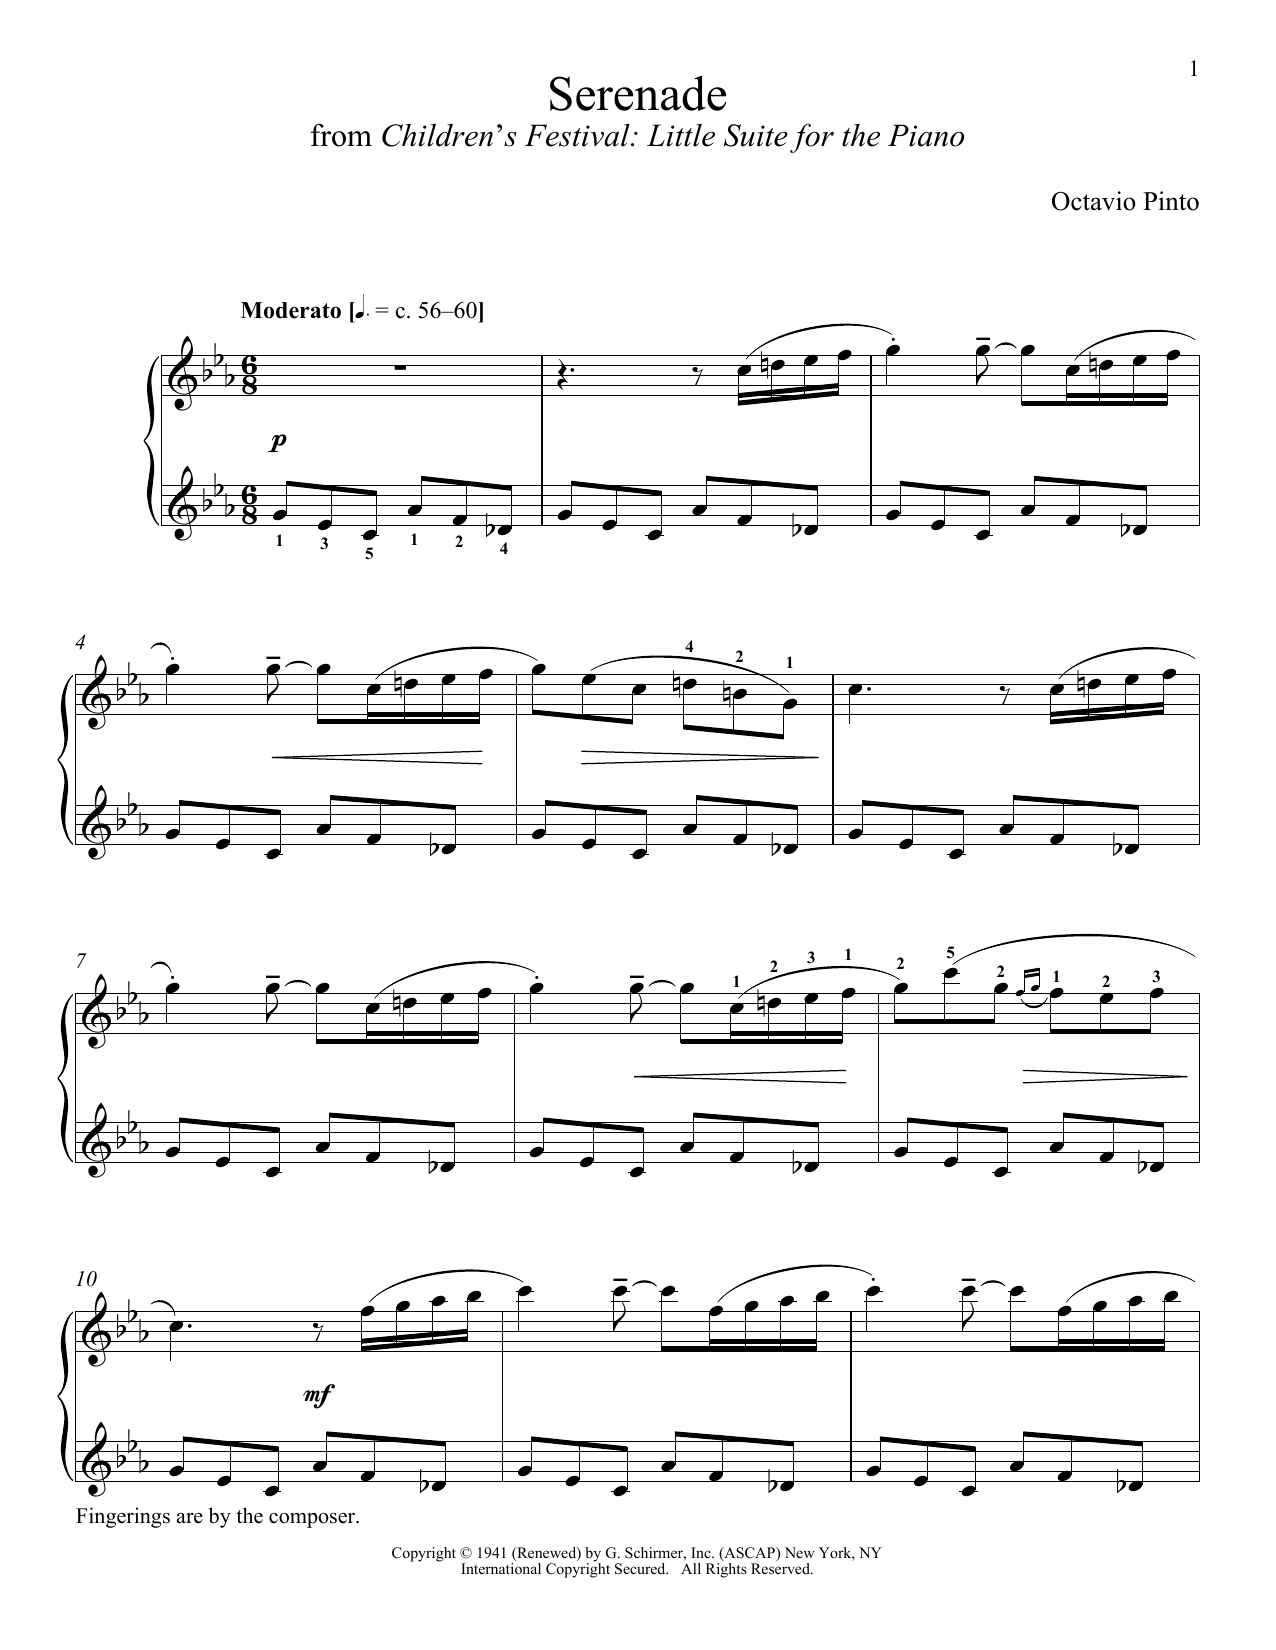 Octavio Pinto Serenade Sheet Music Notes & Chords for Piano - Download or Print PDF